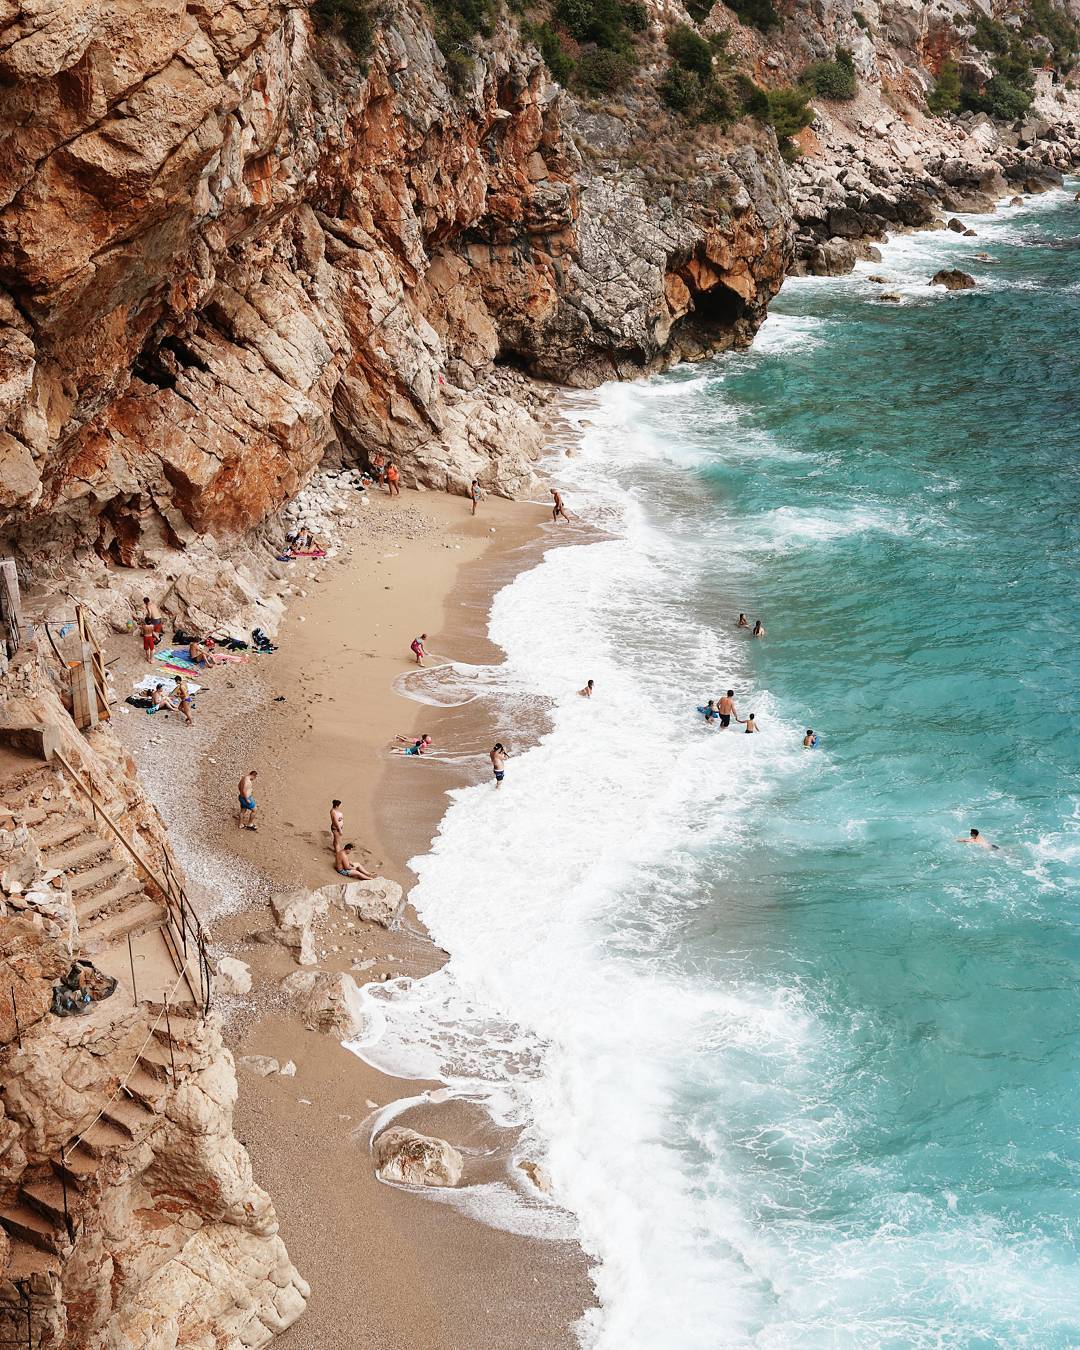 Ovo je jedna od najpopularnijih hrvatskih plaža na koju svi dolaze ‘okinuti’ fotku